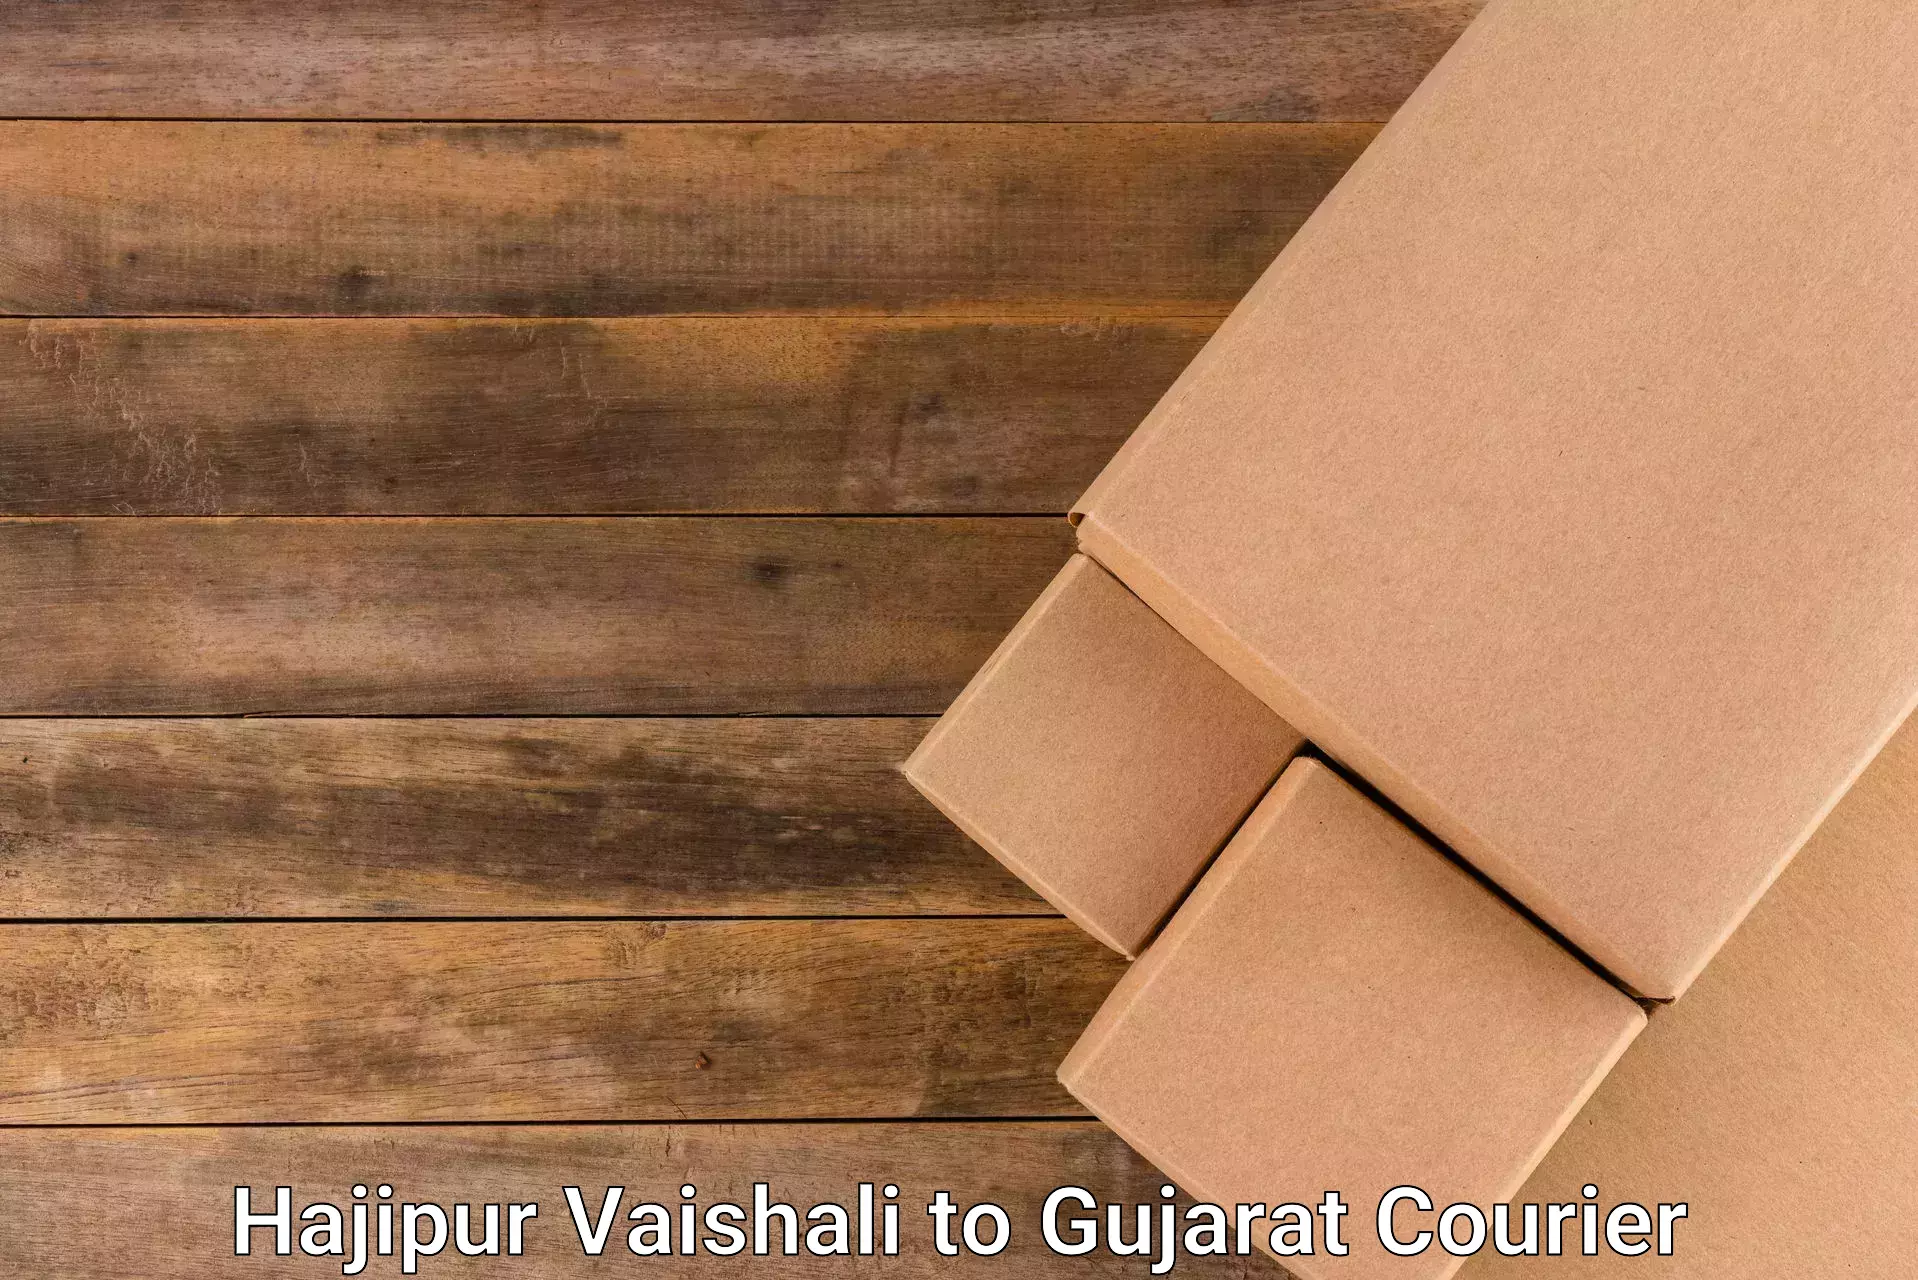 Retail shipping solutions Hajipur Vaishali to Ahwa